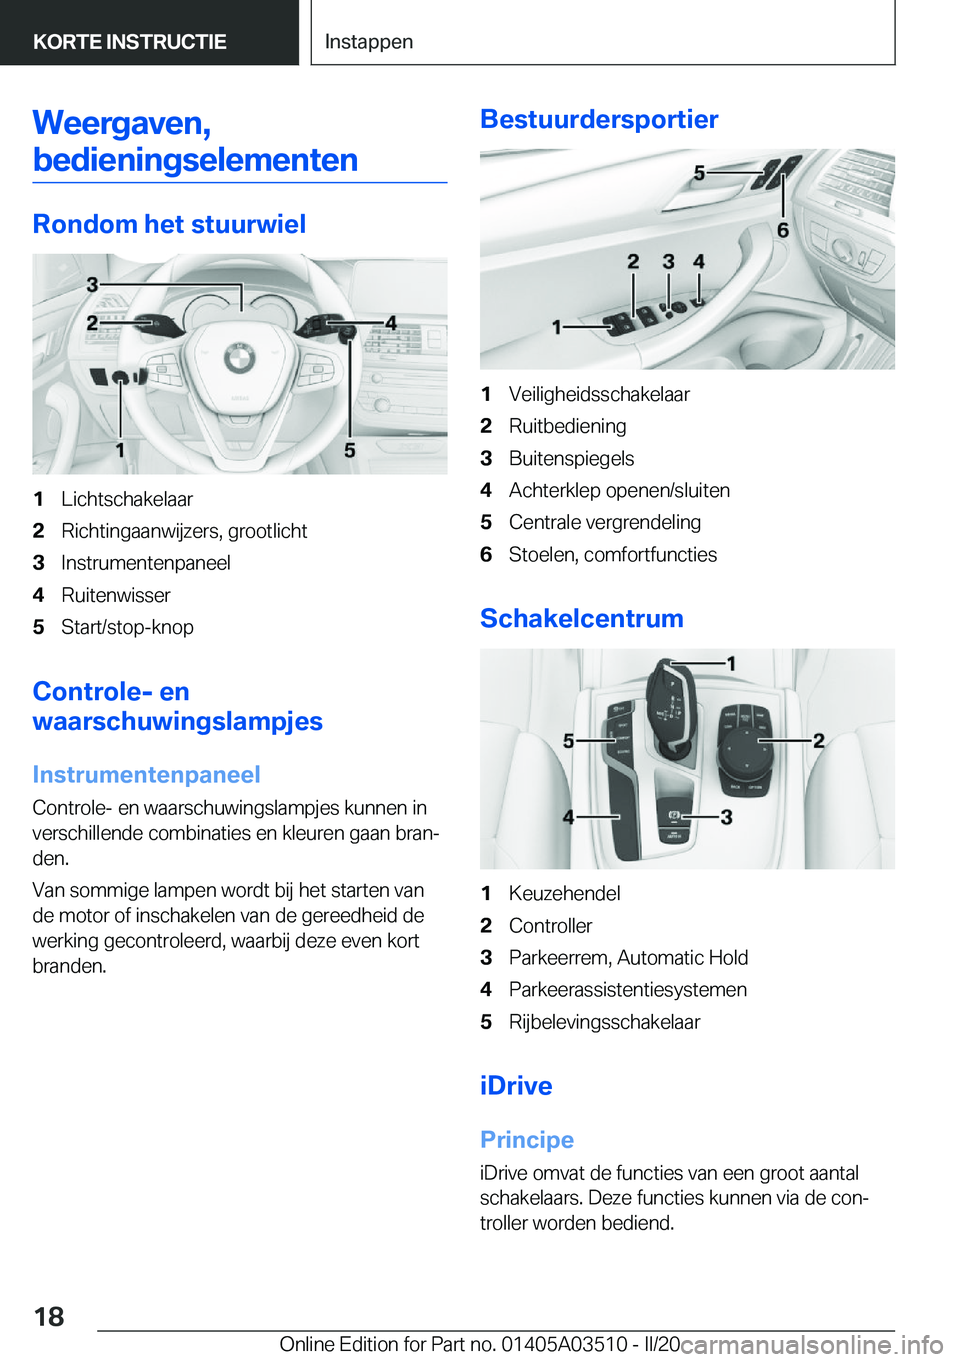 BMW X3 2020  Instructieboekjes (in Dutch) �W�e�e�r�g�a�v�e�n�,�b�e�d�i�e�n�i�n�g�s�e�l�e�m�e�n�t�e�n
�R�o�n�d�o�m��h�e�t��s�t�u�u�r�w�i�e�l
�1�L�i�c�h�t�s�c�h�a�k�e�l�a�a�r�2�R�i�c�h�t�i�n�g�a�a�n�w�i�j�z�e�r�s�,��g�r�o�o�t�l�i�c�h�t�3�I�n